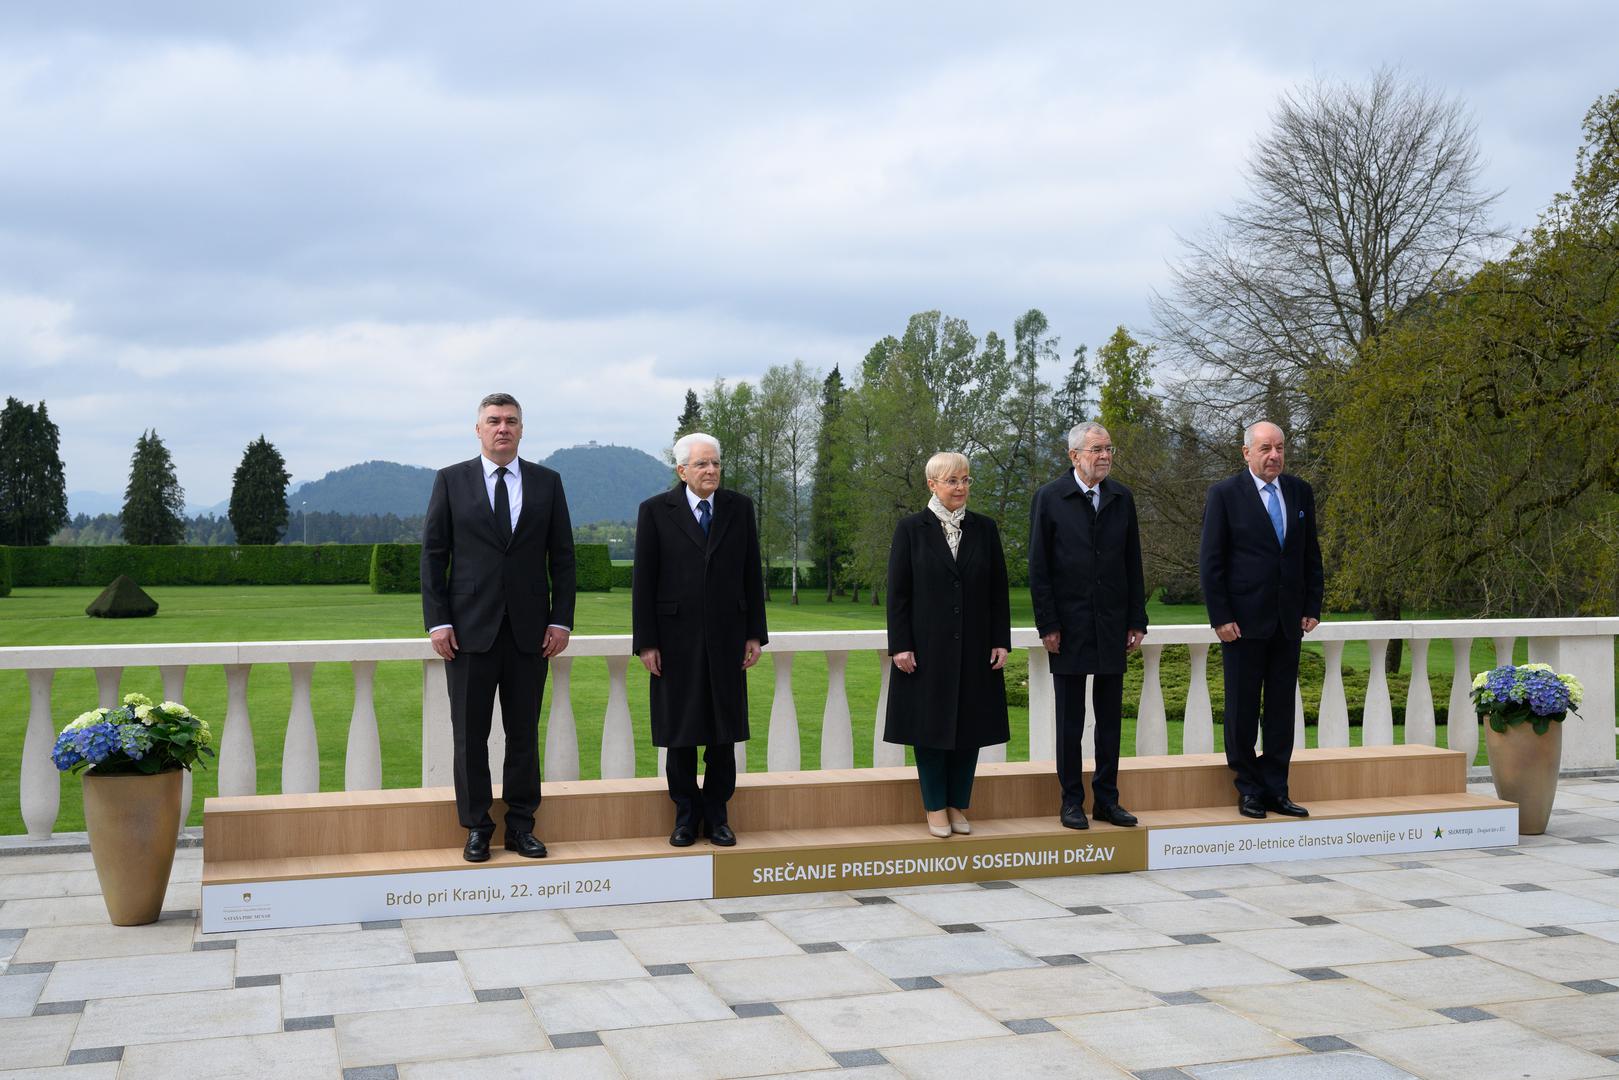 Predsjednici Sloveniji susjednih zemalja, među njima i hrvatski Zoran Milanović, okupili su se danas u Brdu kod Kranja kako bi obilježili dvadesetu godišnjicu slovenskog članstva u Europskoj uniji.